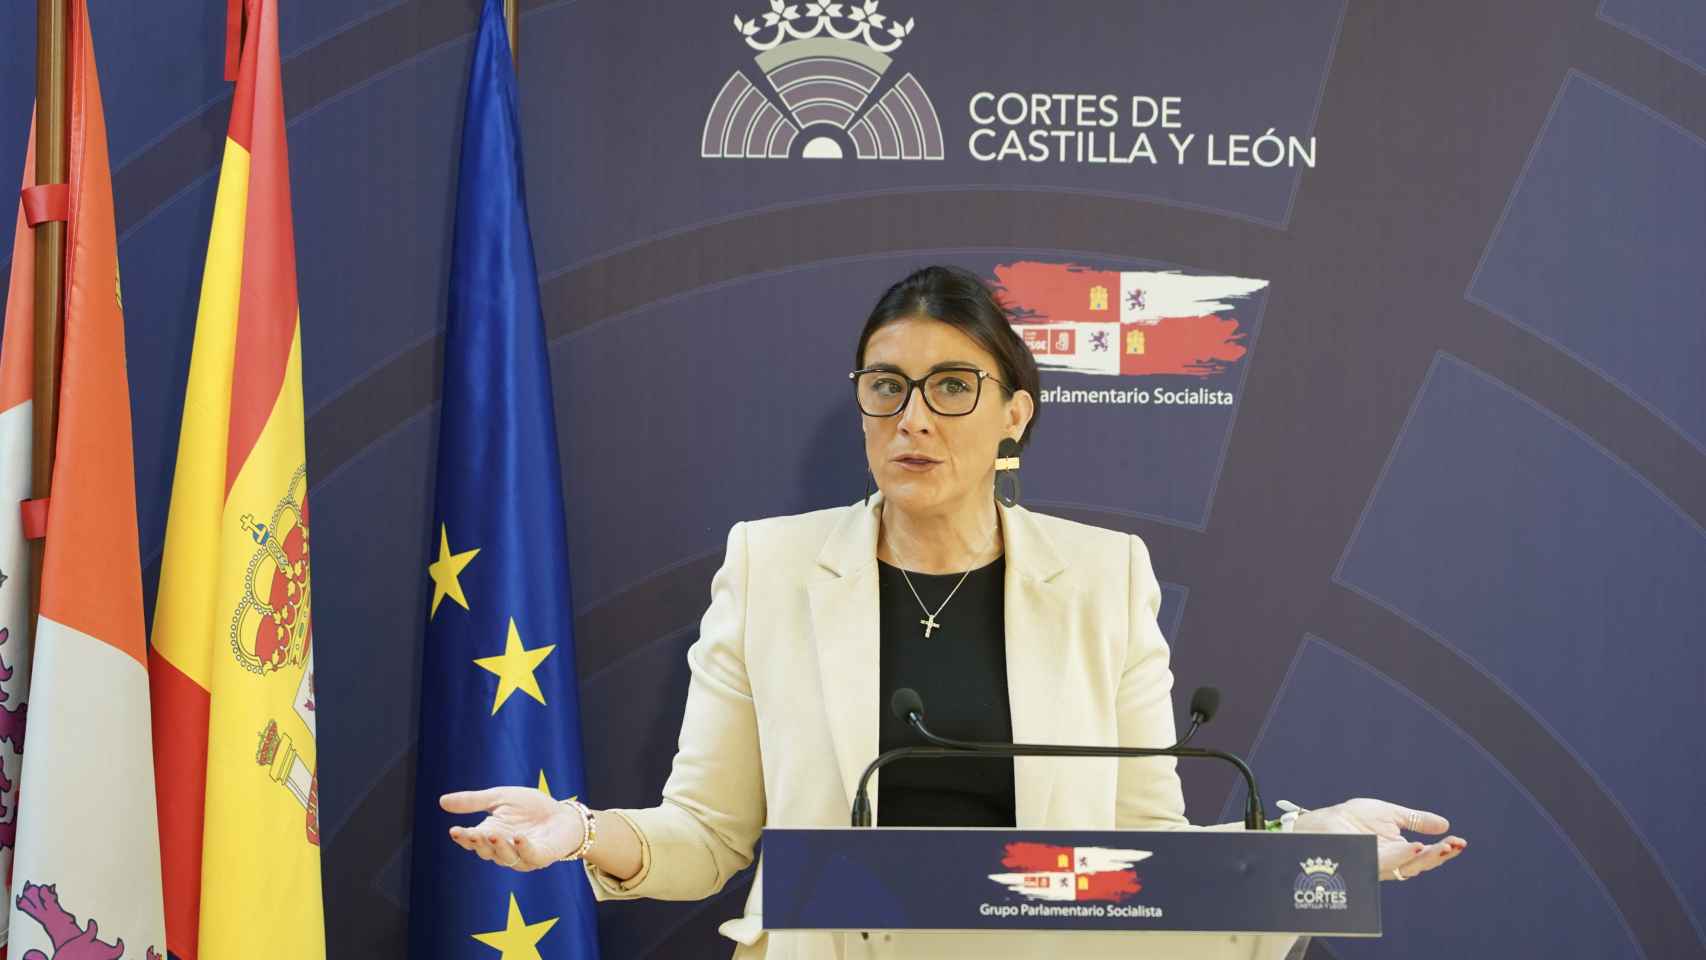 La secretaria de Organización del PSOE en Castilla y León, Ana Sánchez, analiza diversos asuntos de actualidad política de Castilla y León.